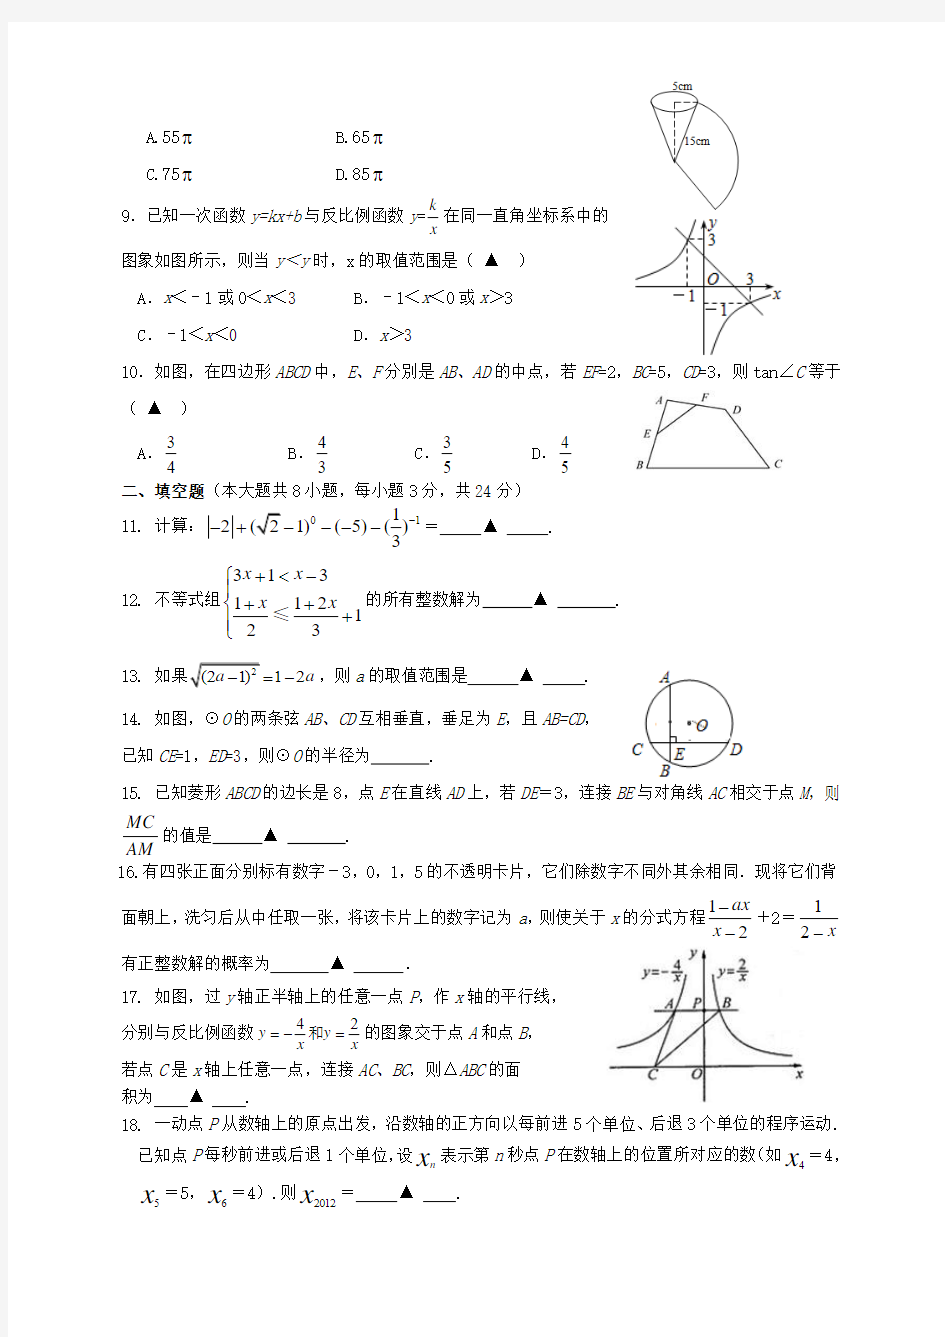 湖北省荆州市2013年初中升学考试数学模拟试题(3)